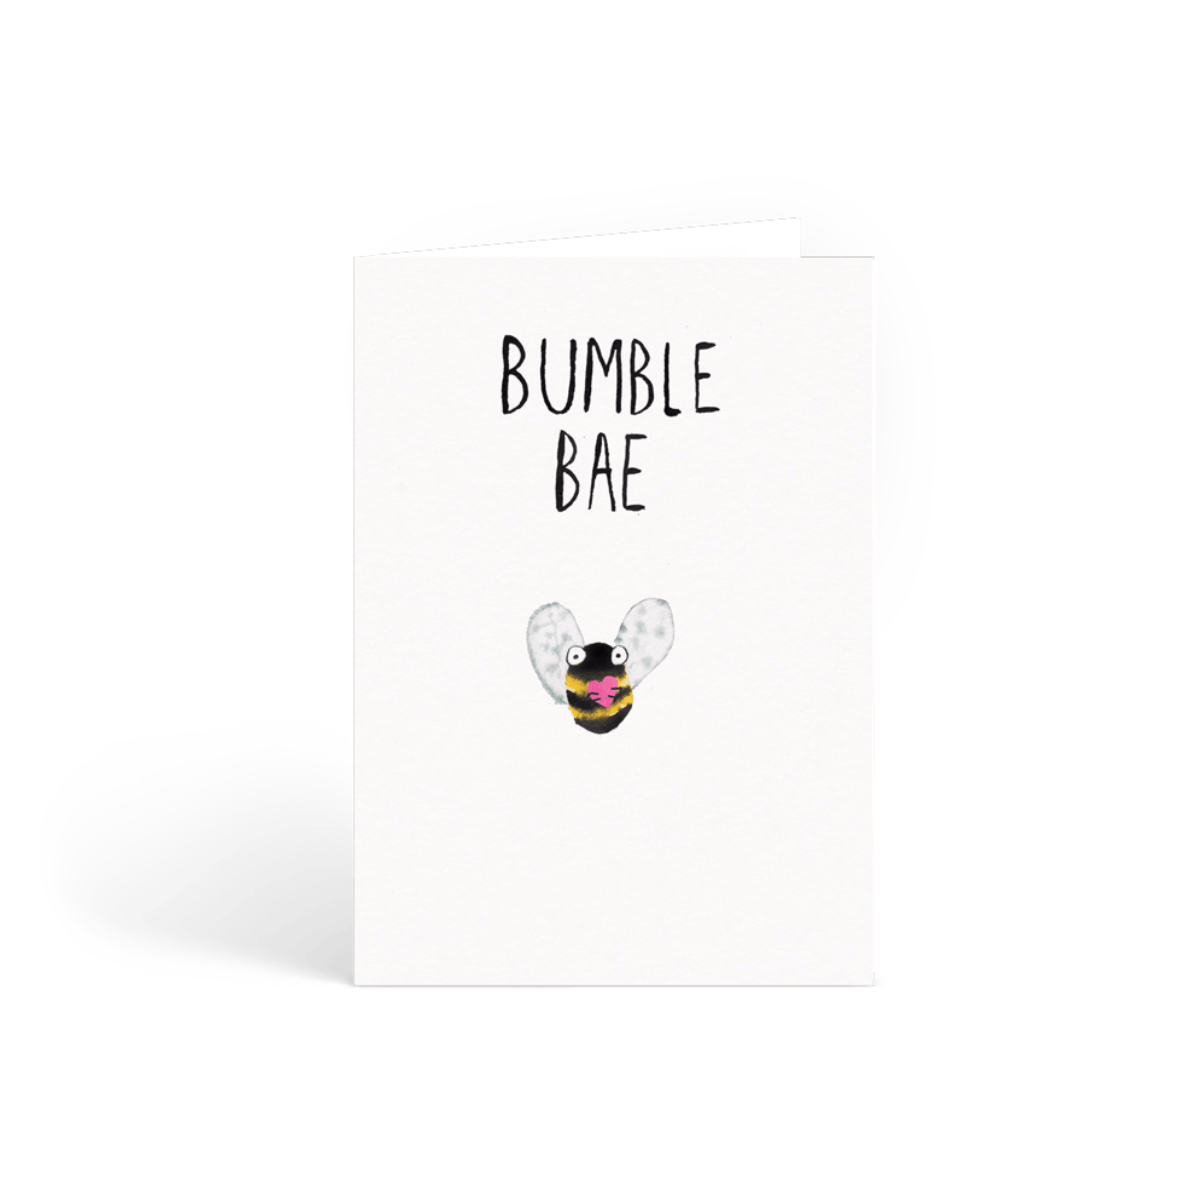 Bumble Bae